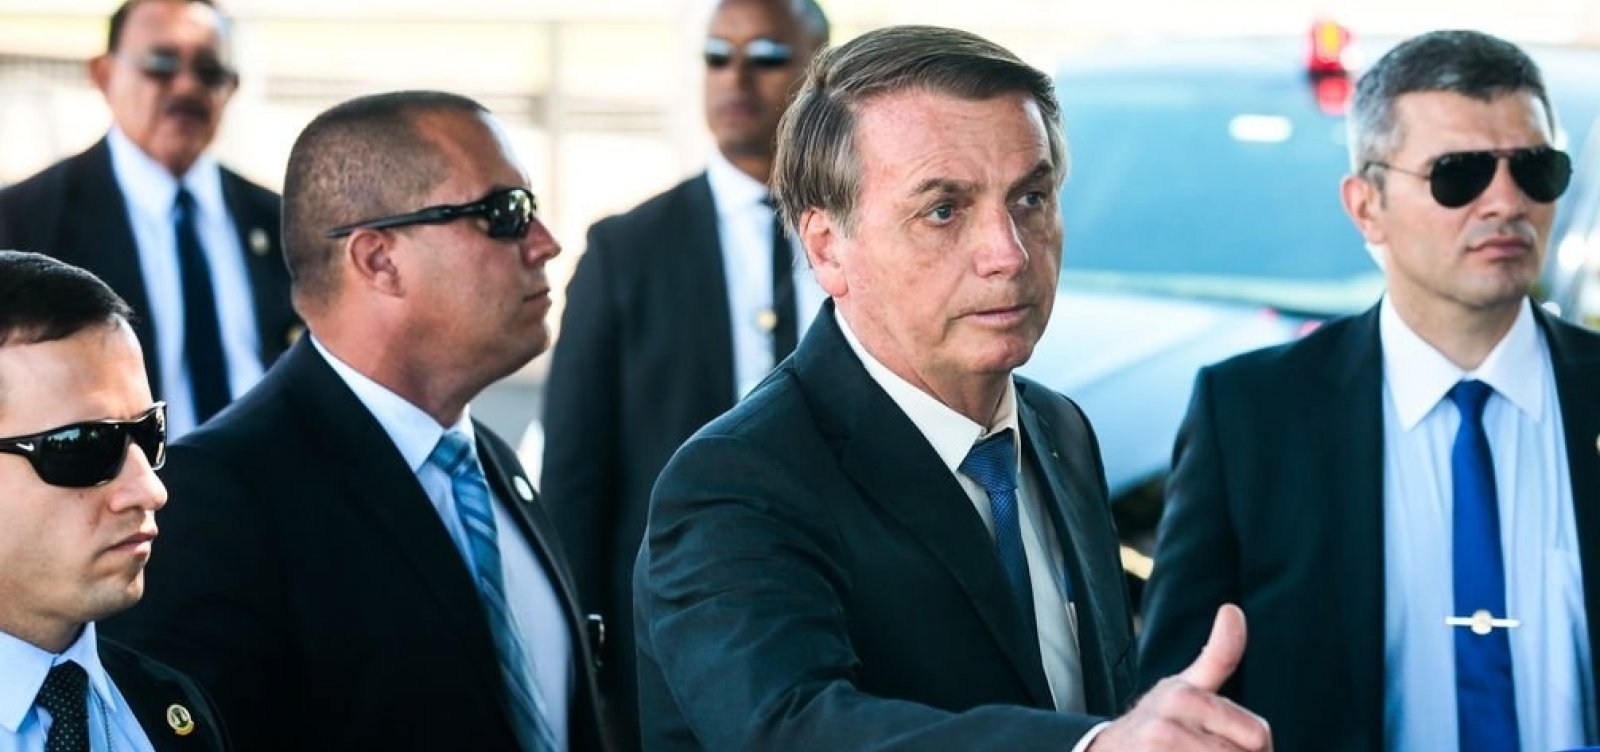 'Se for o caso, ligo para Trump. Tenho canal aberto', diz Bolsonaro sobre tarifas dos EUA